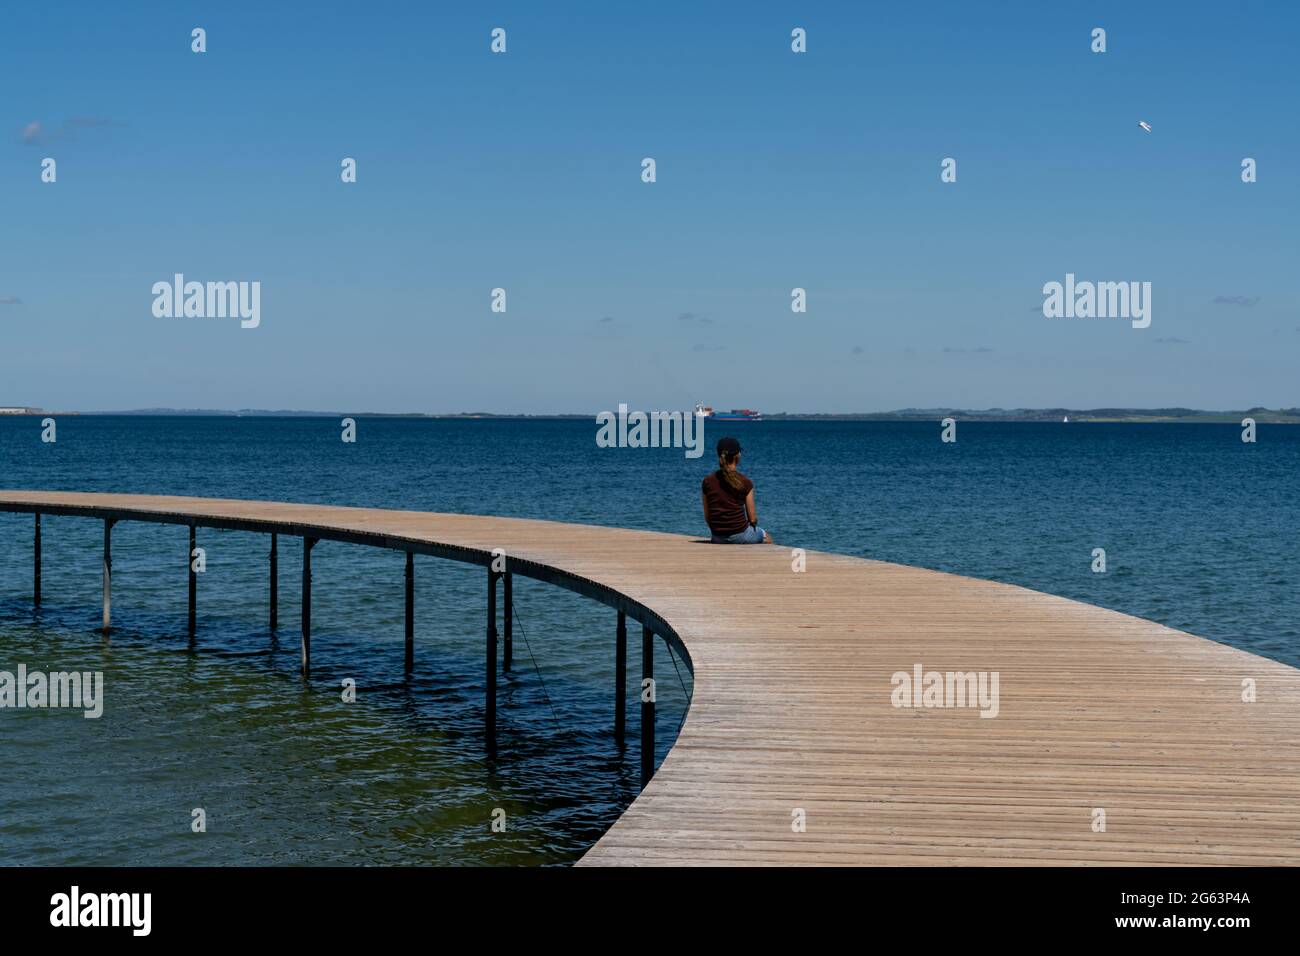 Eine schlanke Frau sitzt allein auf einer kreisförmigen Promenade, die über ein ruhiges, blaues Meer führt Stockfoto